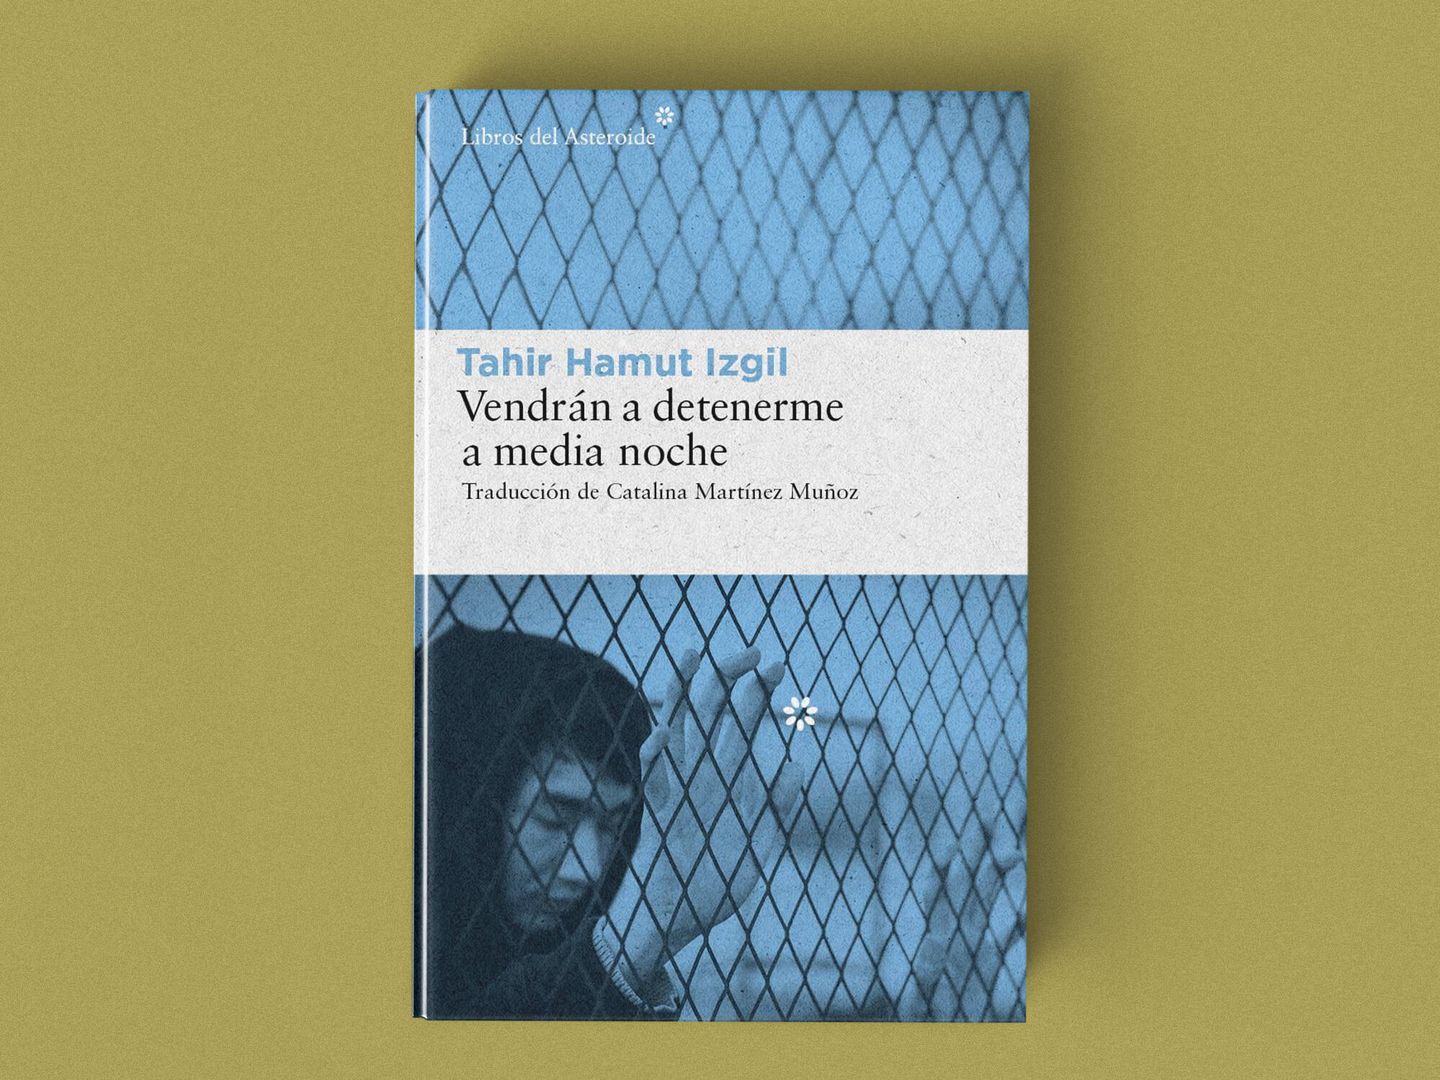 'Vendrán a detenerme a media noche' de Tahir Hamut Izgil.